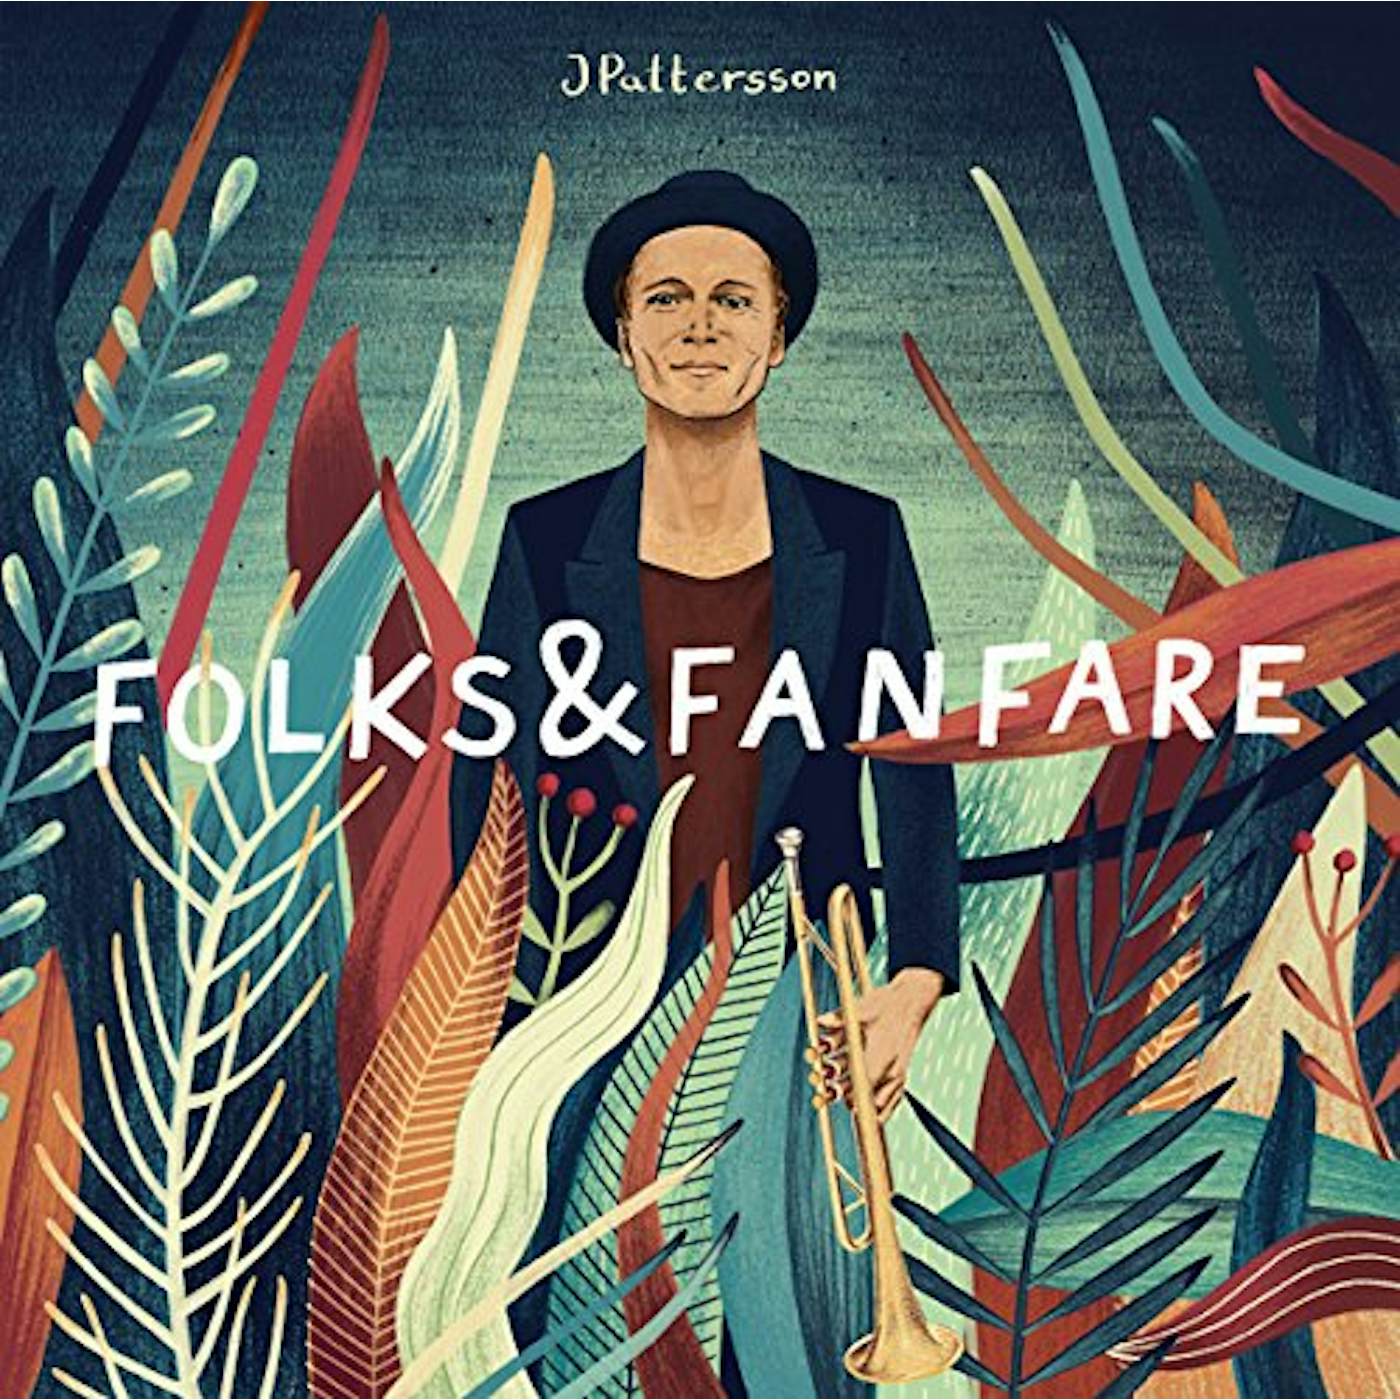 JPattersson FOLKS & FANFARE CD